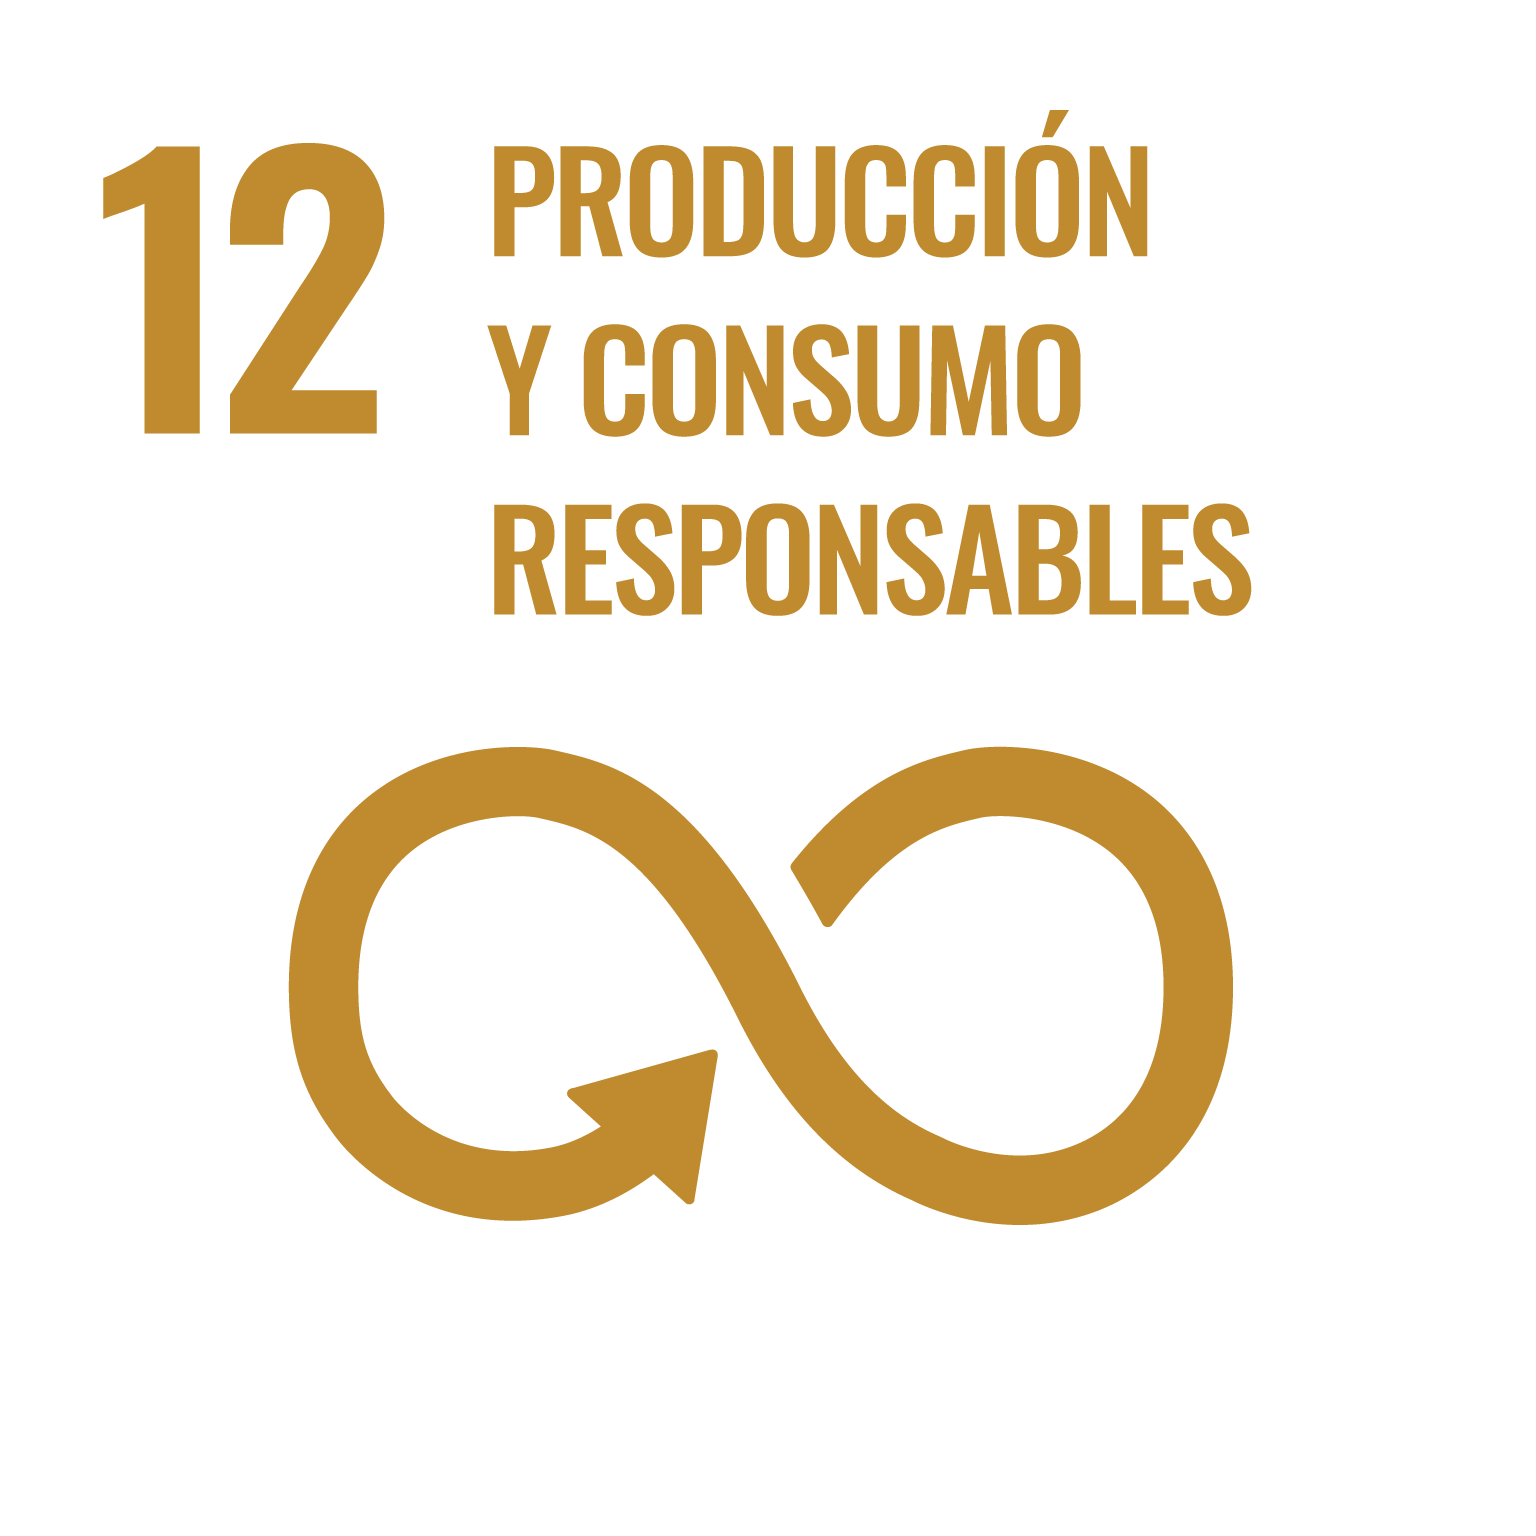 Icono del Objetivo de Desarrollo Sostenible Producción y consumo responsable